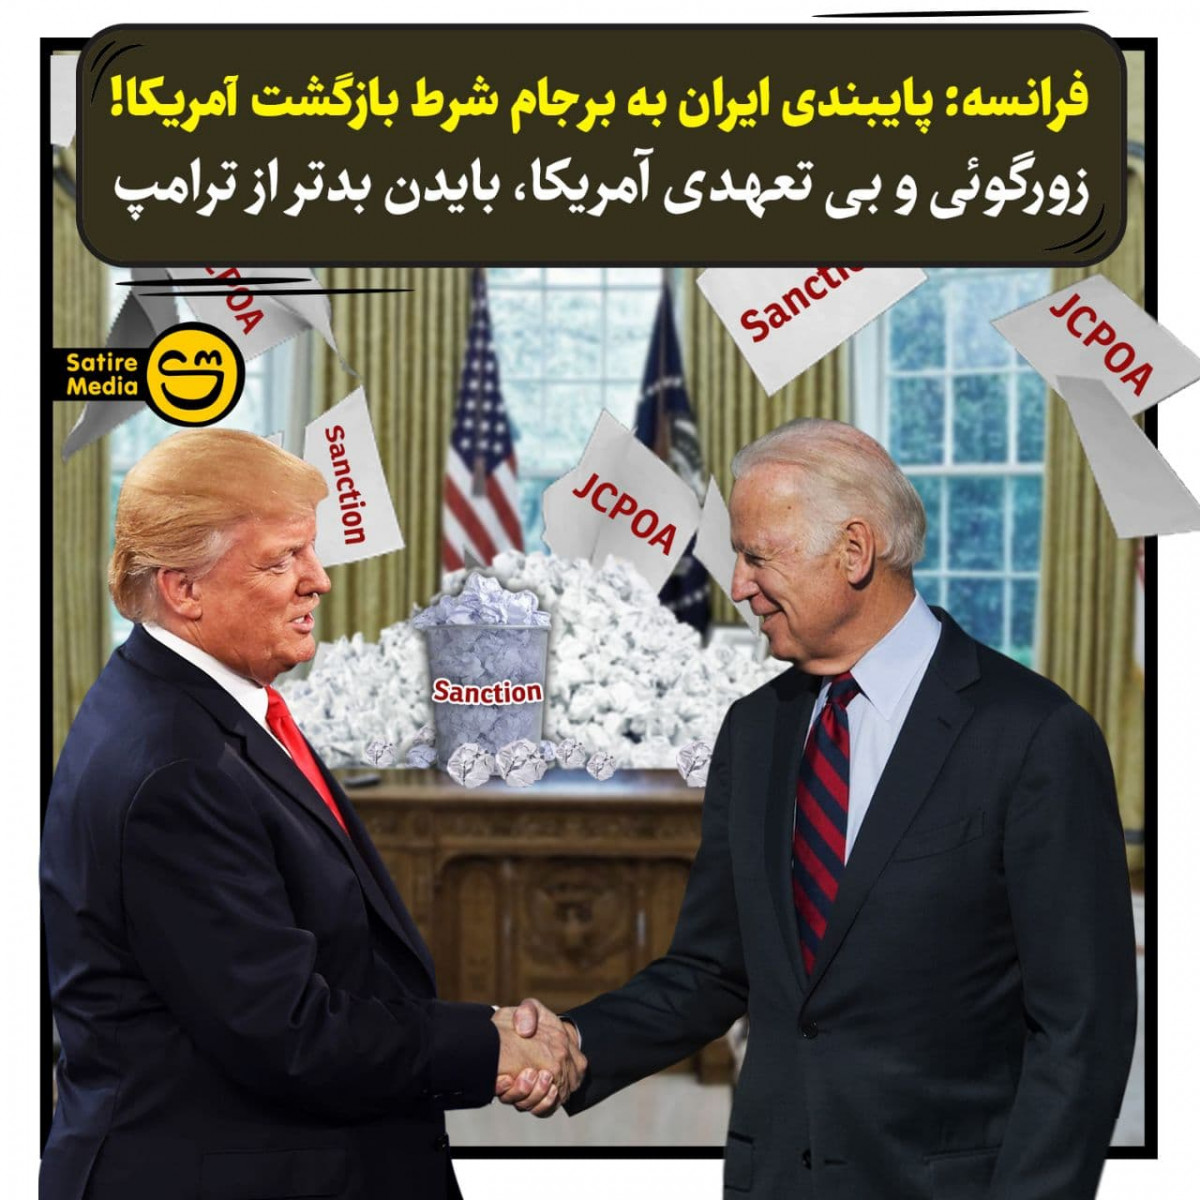 پوستر: فرانسه پایبندی ایران به برجام شرط بازگشت آمریکا